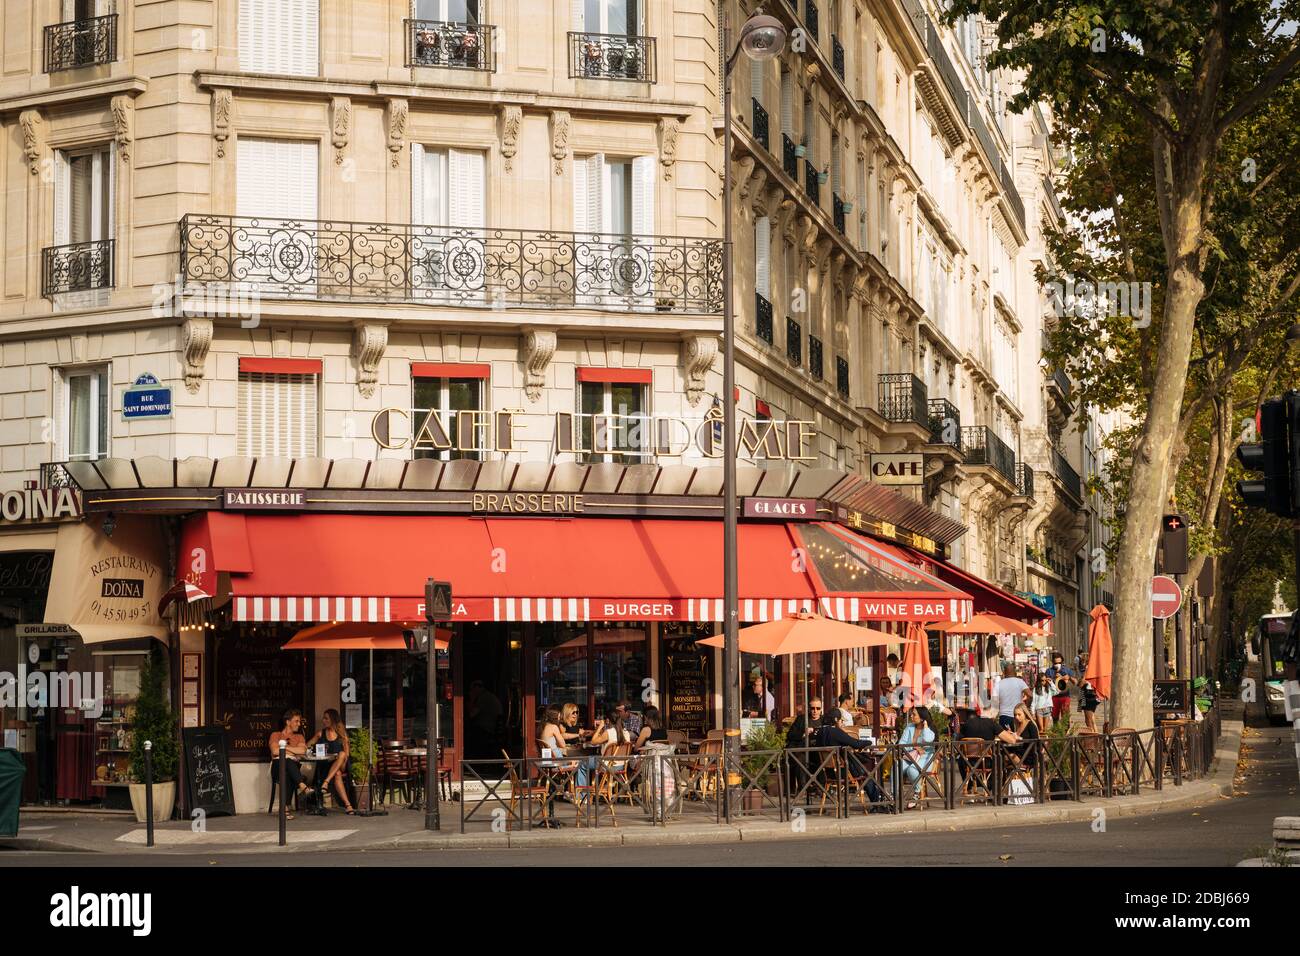 Extérieur du café le Dome Brasserie, Paris, Ile-de-France, France, Europe Banque D'Images